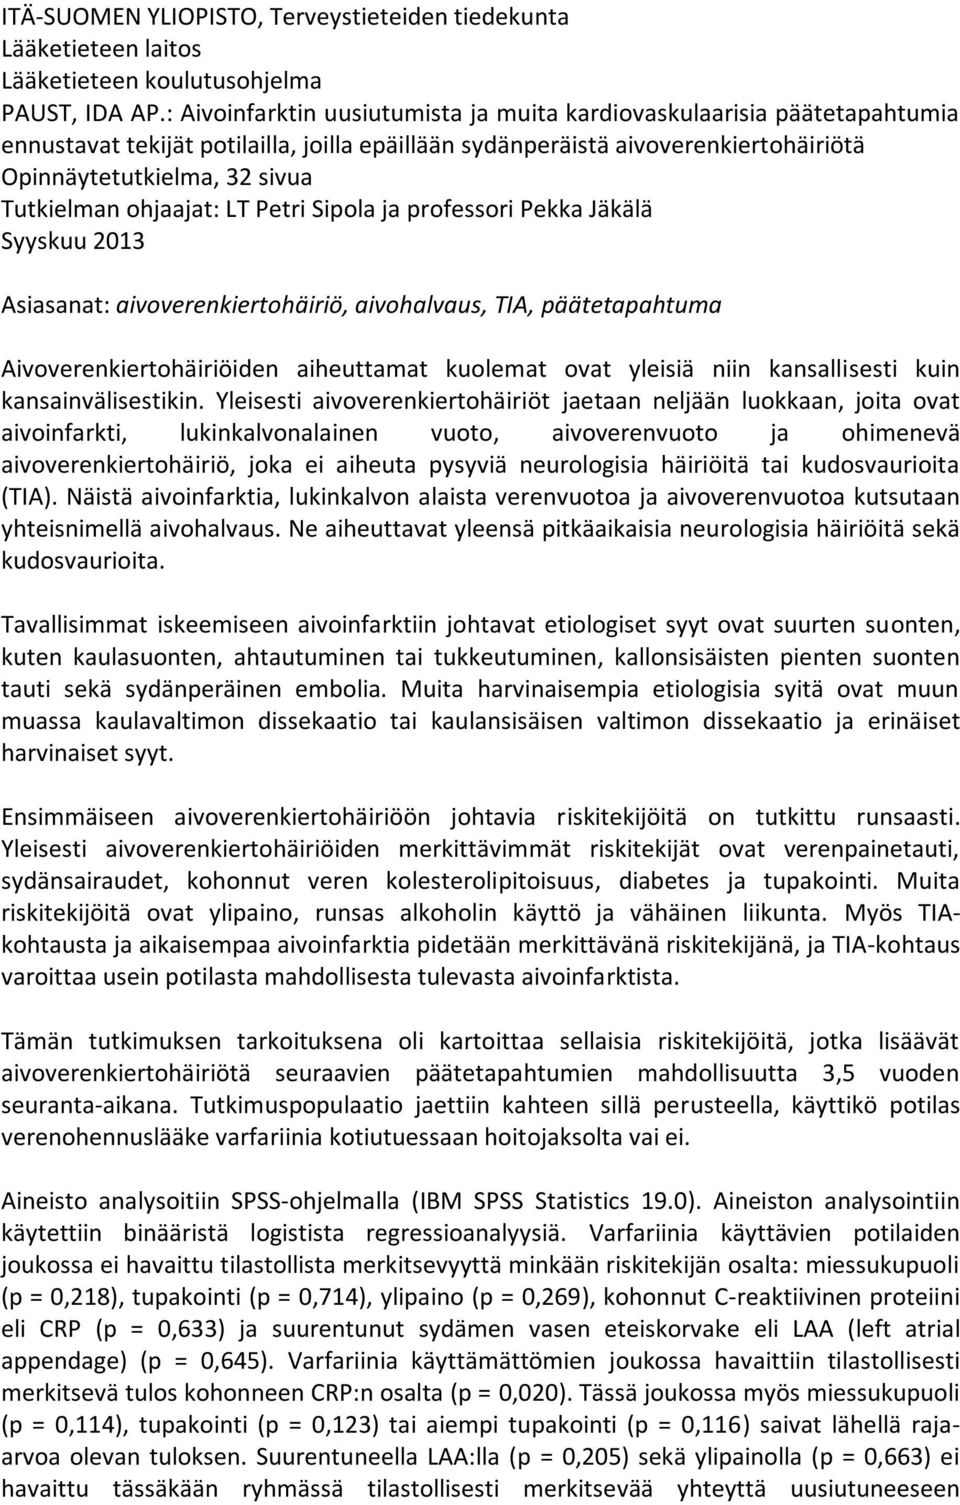 ohjaajat: LT Petri Sipola ja professori Pekka Jäkälä Syyskuu 2013 Asiasanat: aivoverenkiertohäiriö, aivohalvaus, TIA, päätetapahtuma Aivoverenkiertohäiriöiden aiheuttamat kuolemat ovat yleisiä niin